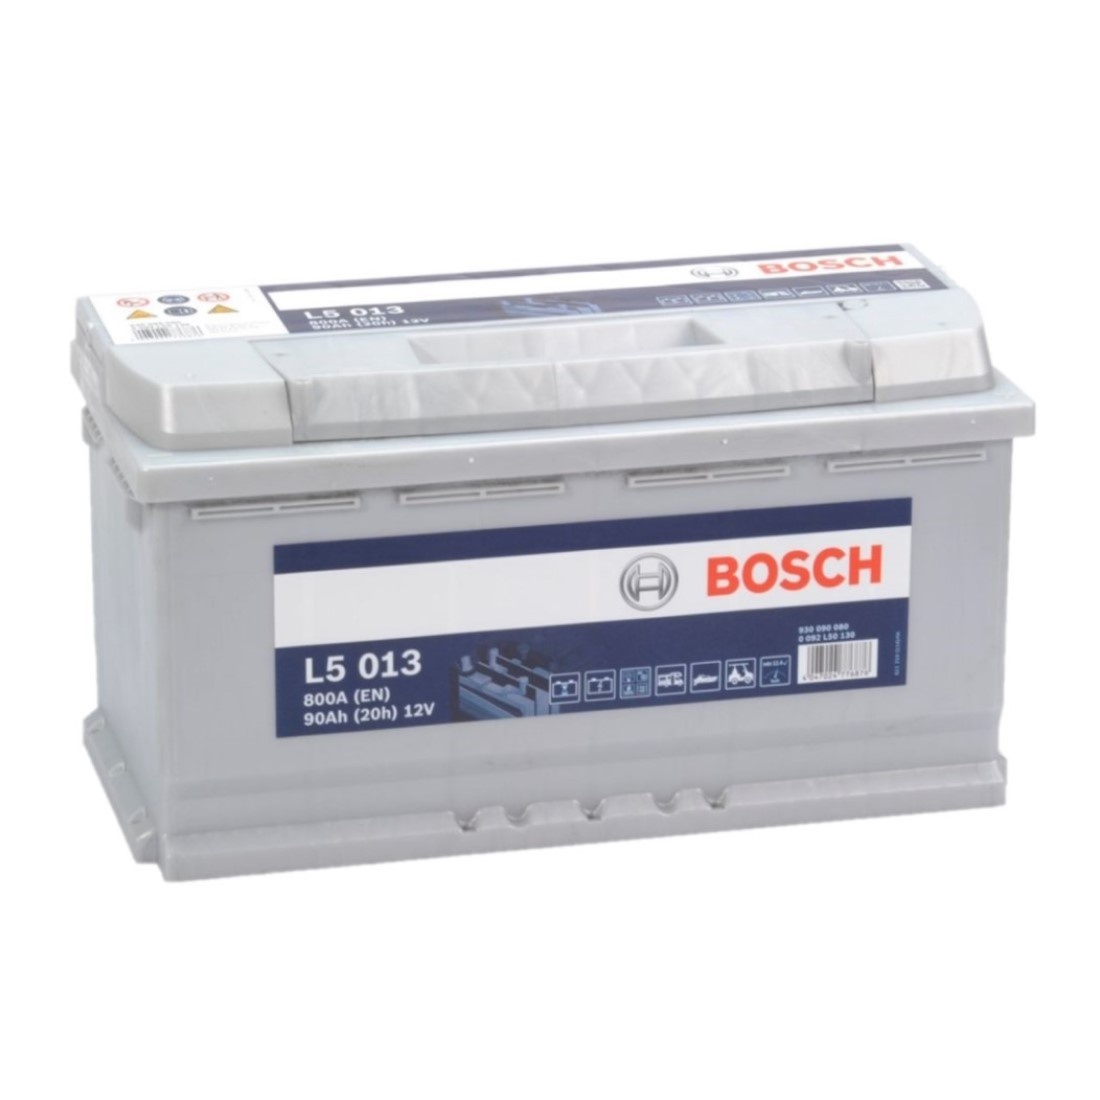 erger maken Kneden begin Bosch Accu semi tractie 12 volt 90 ah Type L 5013 - Accu Service Holland